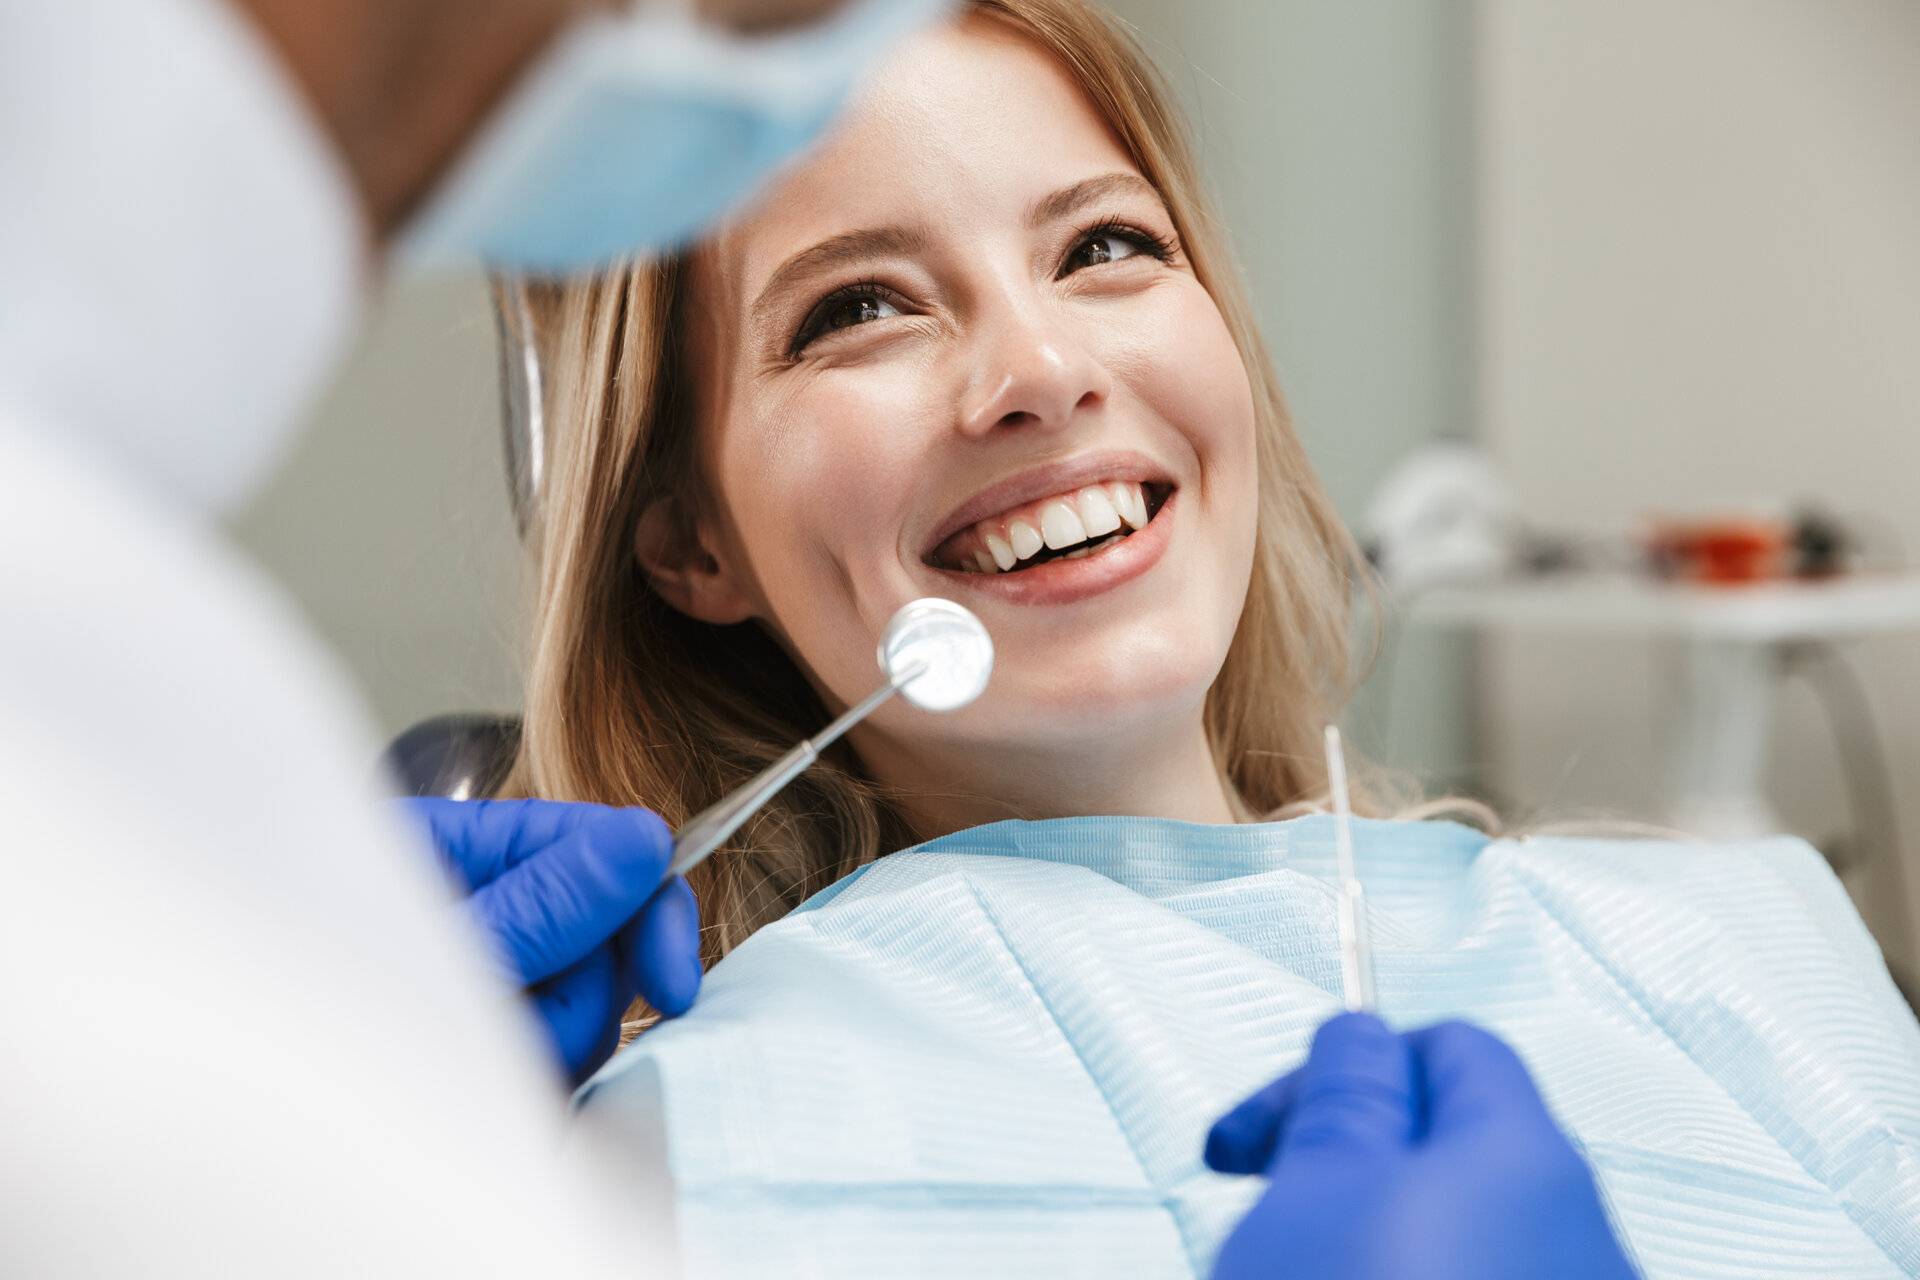 Bild einer hübschen jungen Frau, die im Behandlungsstuhl sitzt, während ein professioneller Zahnarzt ihre Zähne kontrolliert.